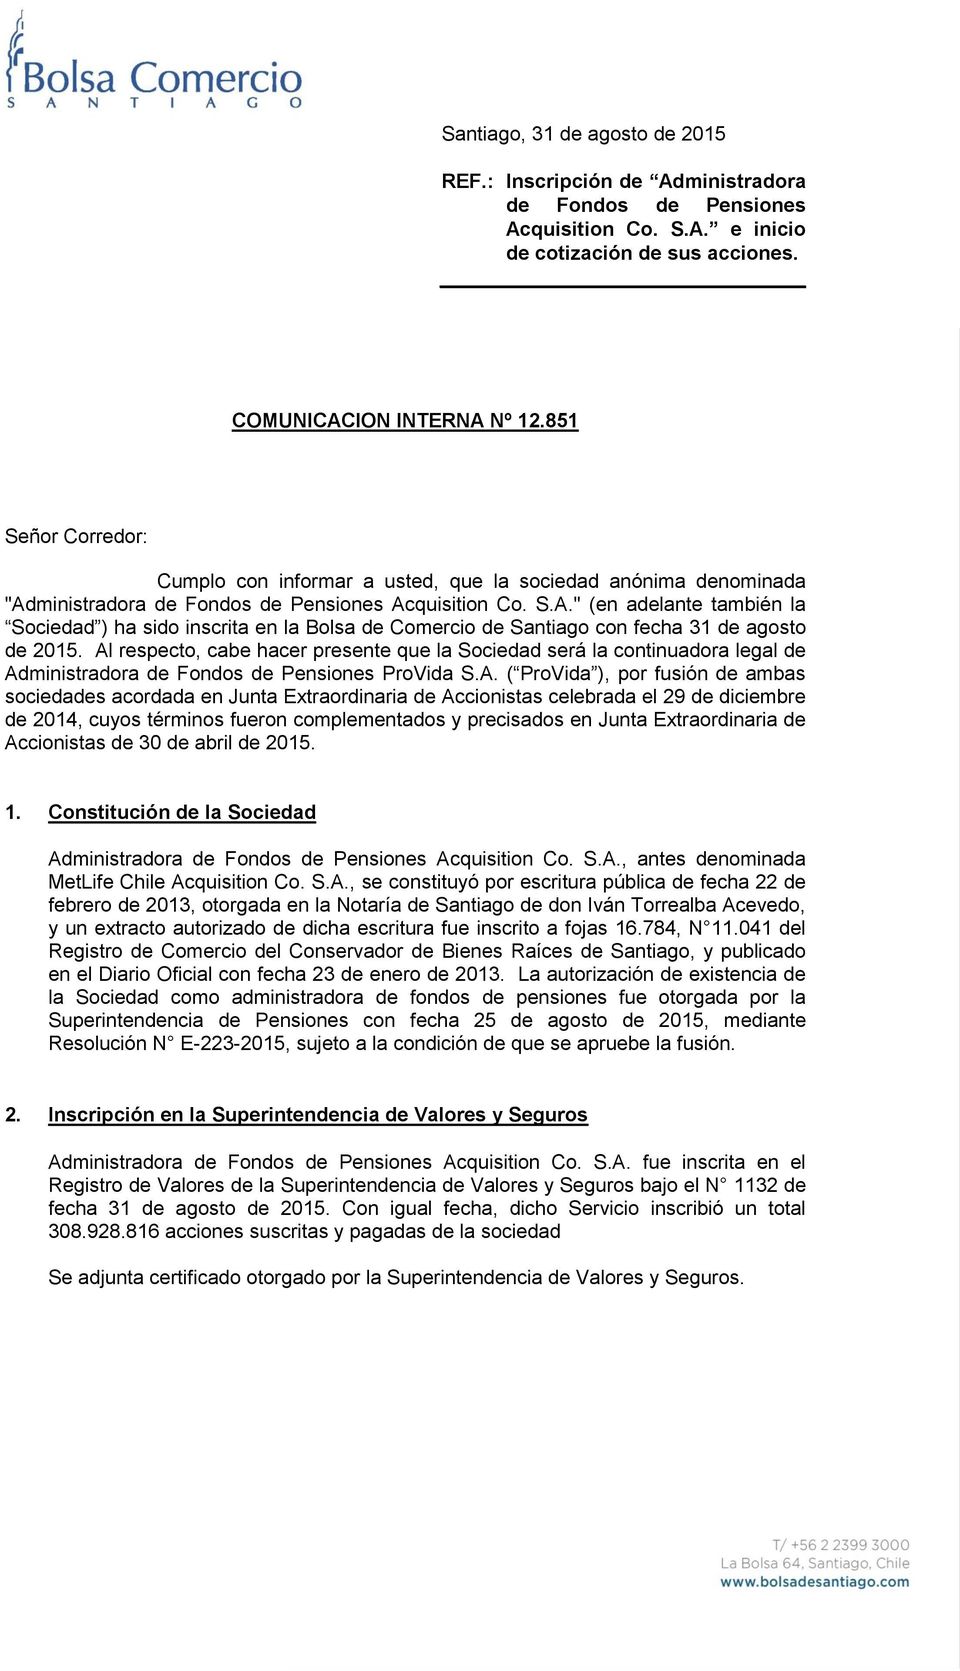 ministradora de Fondos de Pensiones Acquisition Co. S.A." (en adelante también la Sociedad ) ha sido inscrita en la Bolsa de Comercio de Santiago con fecha 31 de agosto de 2015.